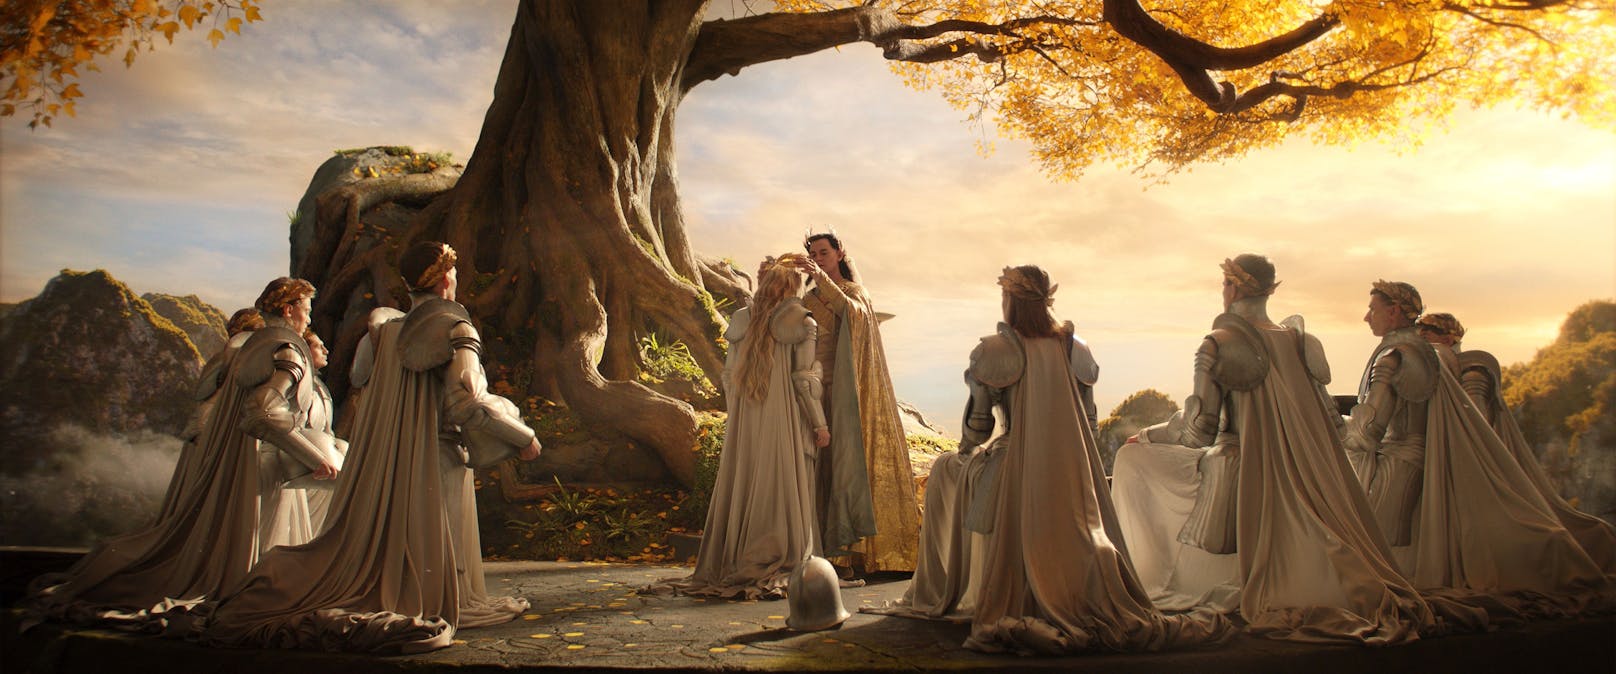 <strong>"Herr der Ringe: Die Ringe der Macht" auf Amazon Prime</strong>: Das epische Drama spielt Tausende von Jahren vor den Ereignissen von J.R.R. Tolkiens Der Hobbit und Der Herr der Ringe.